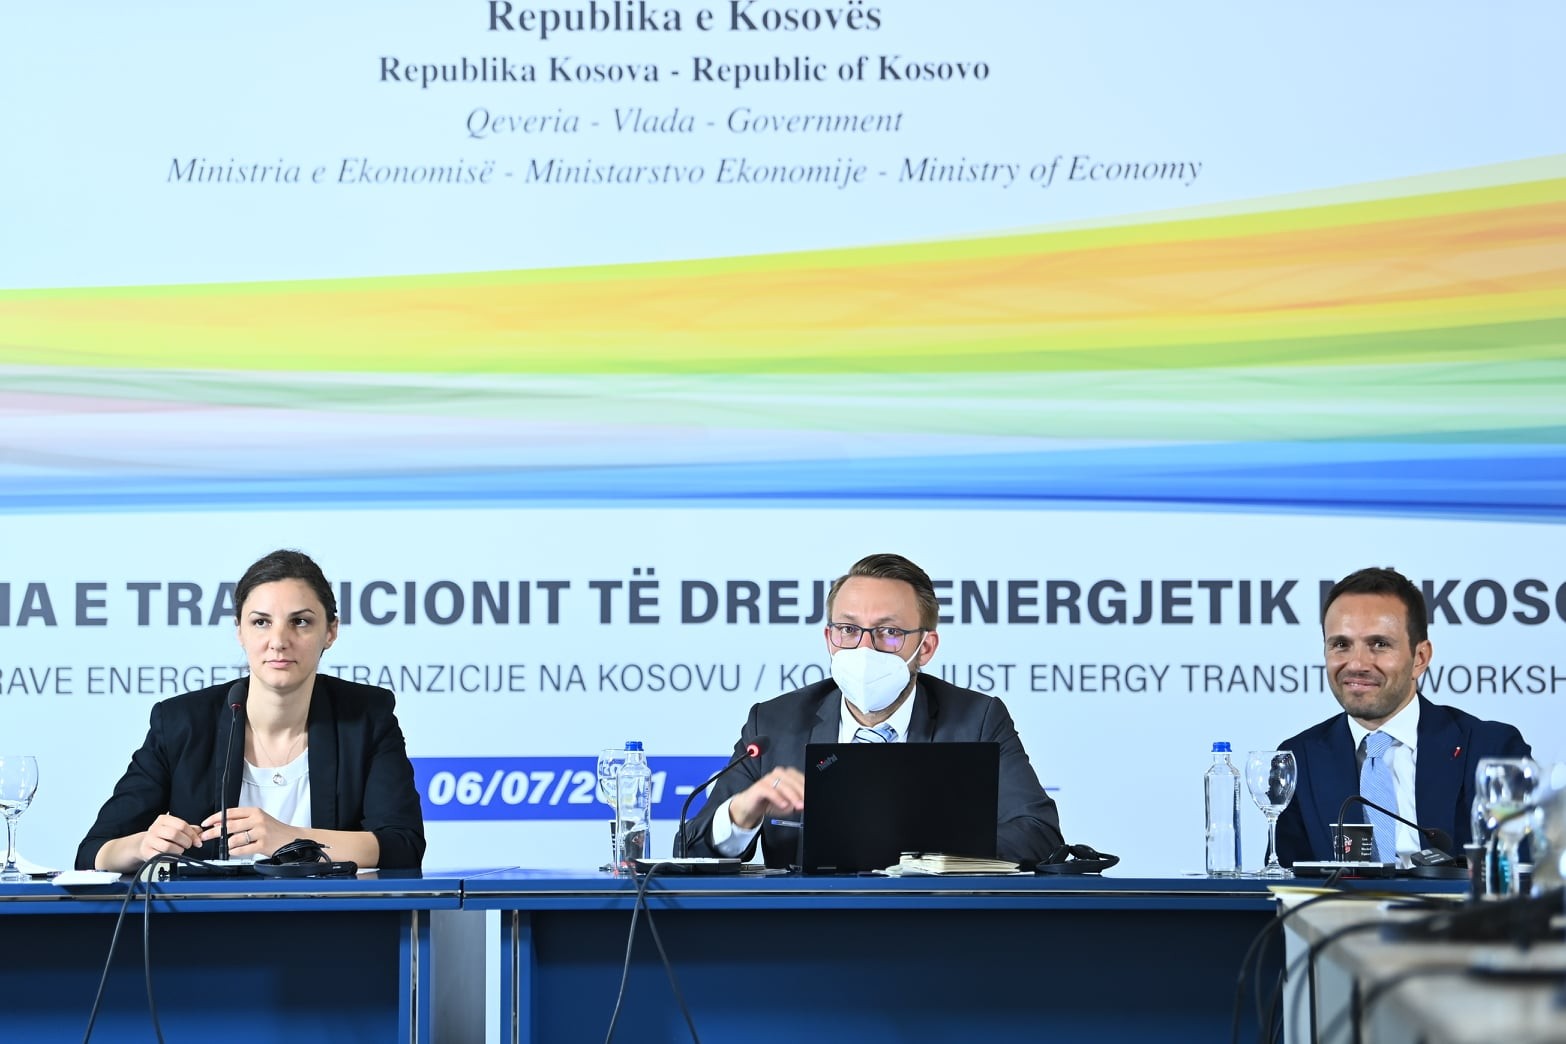 Përfundon punëtoria për tranzicionin drejtë energjetik në Kosovë